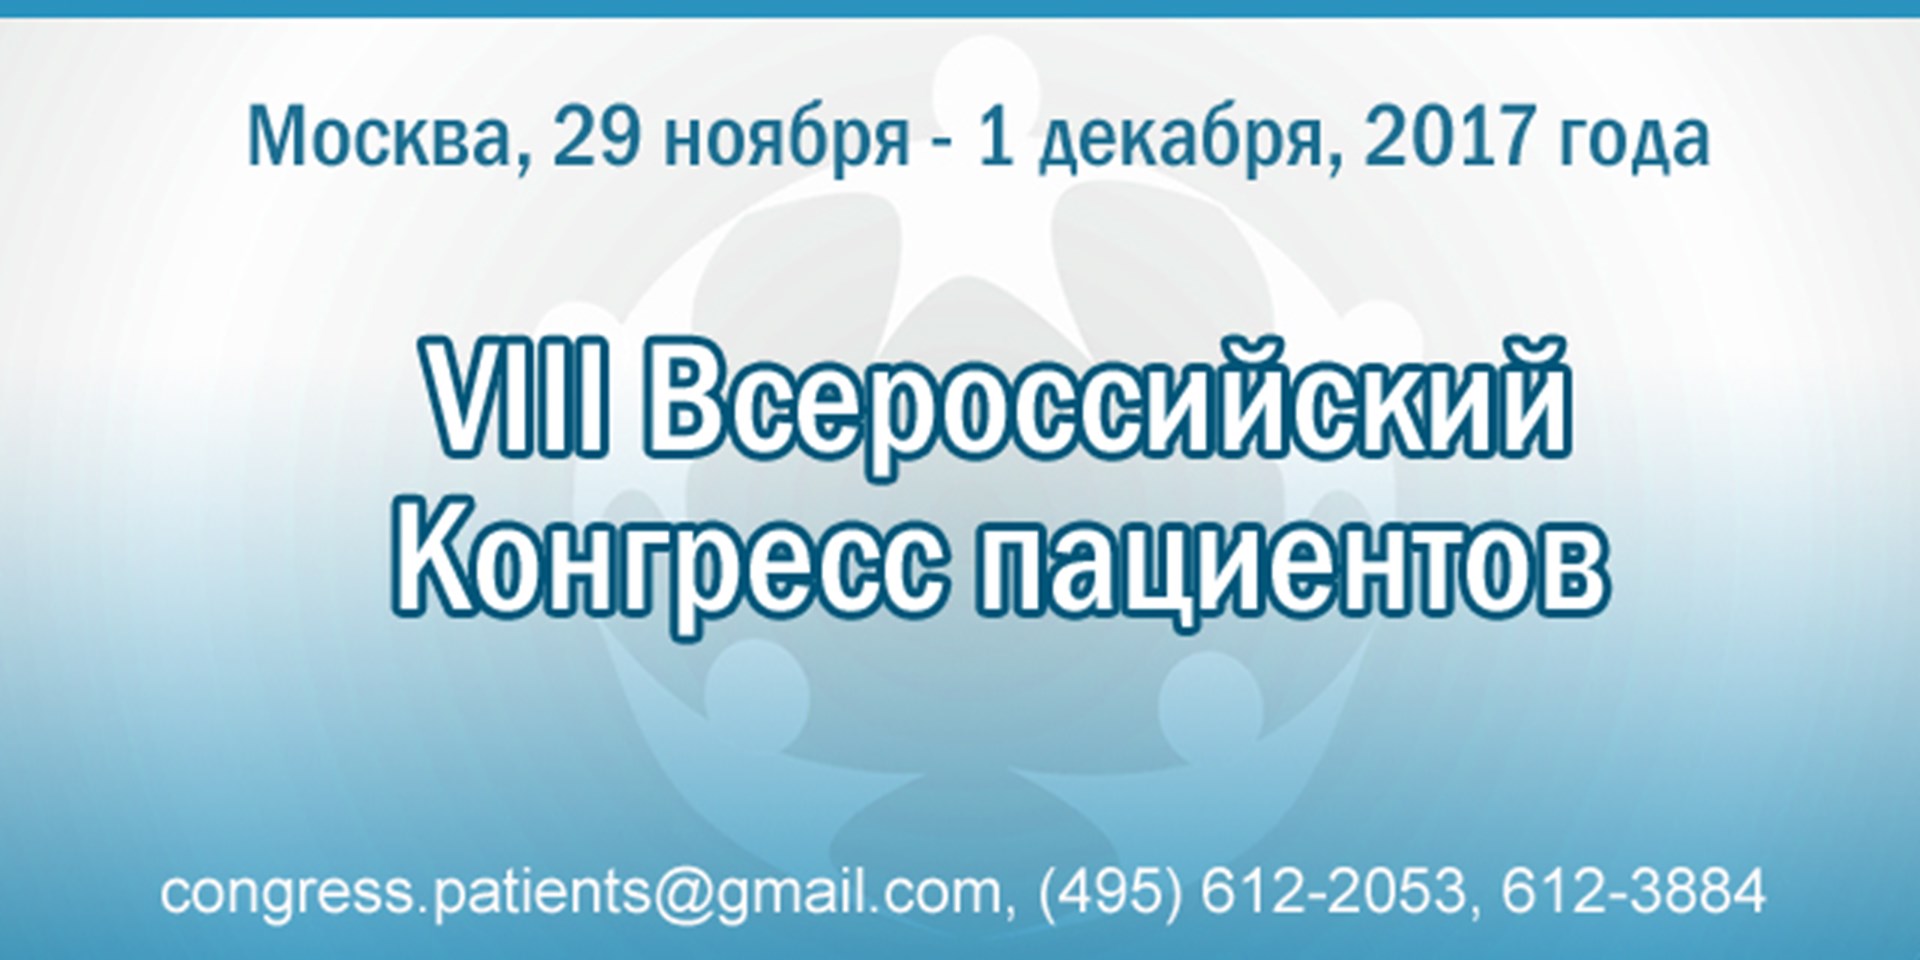 VIII Всероссийский Конгресс пациентов